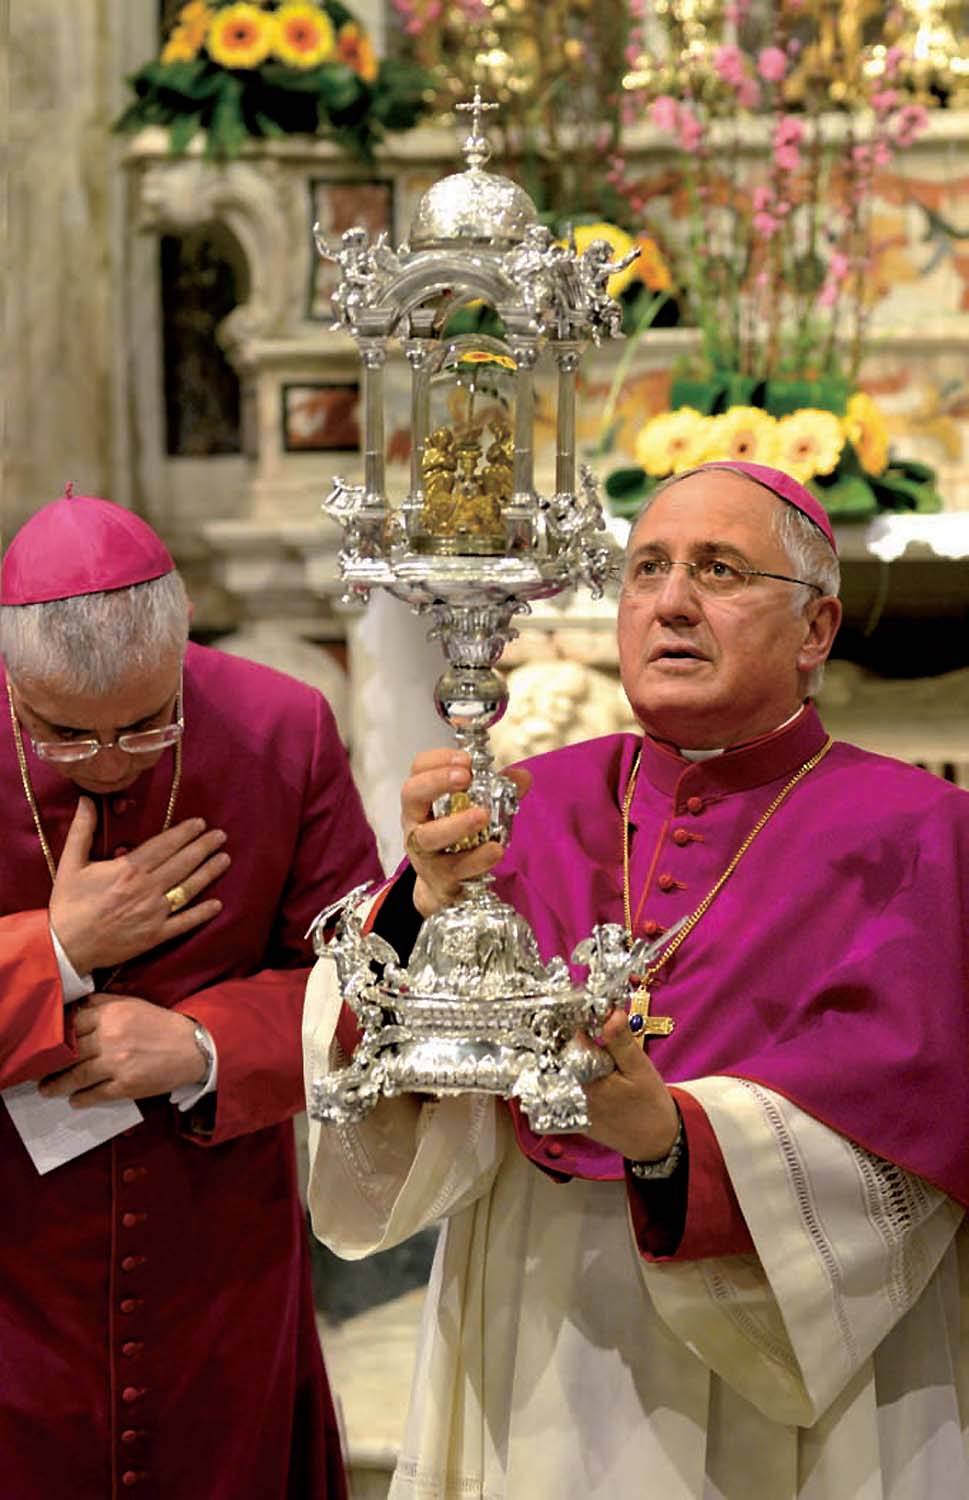 25 marzo 2016: Mons. Mansi, affiancato da Mons. Renna, espone all'adorazione la reliquia della Sacra Spina